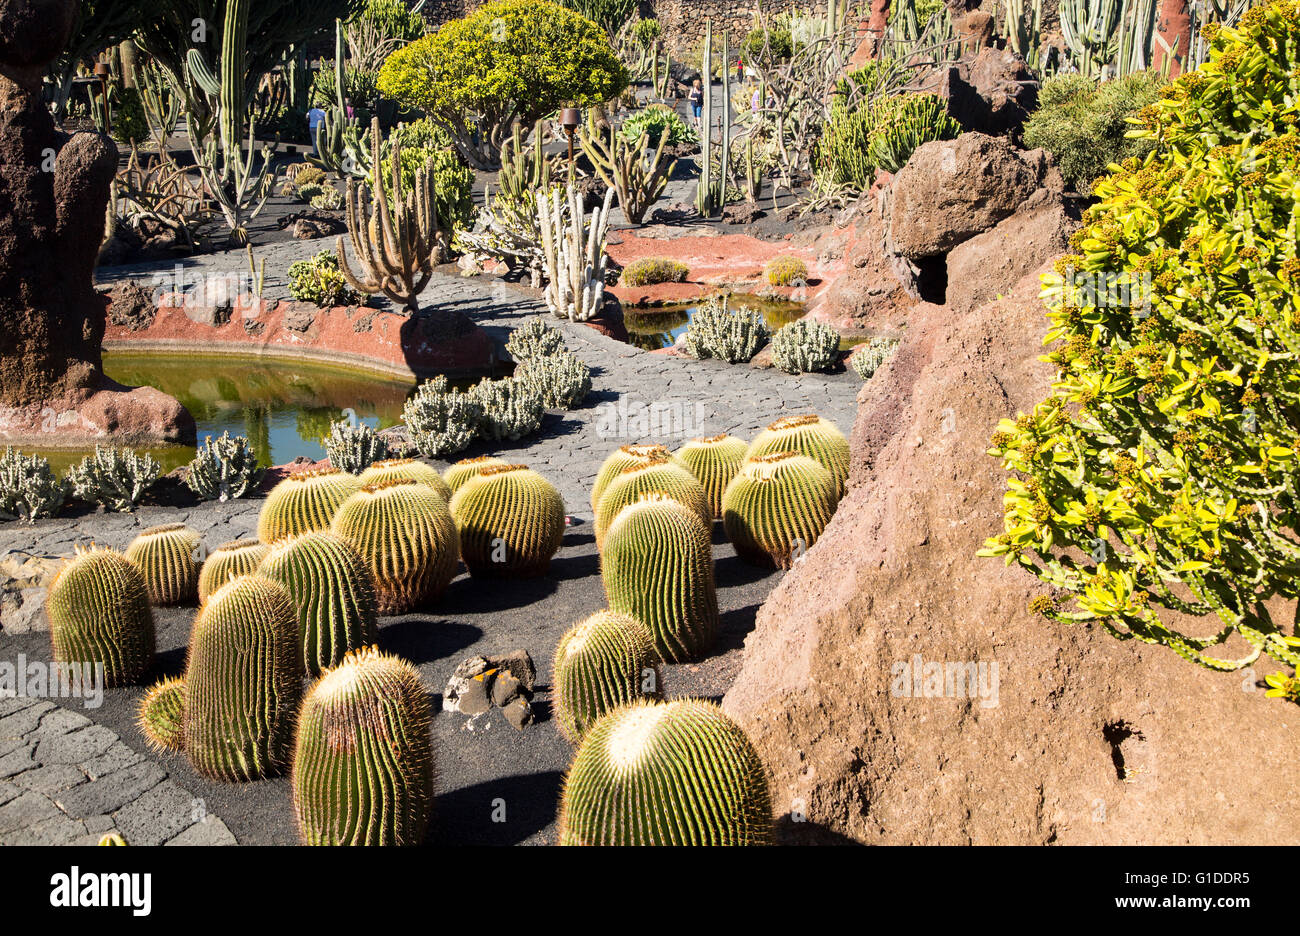 Dentro de las plantas de cactus jardín de cactus diseñado por César Manrique, Guatiza, Lanzarote, Islas Canarias, España. Foto de stock